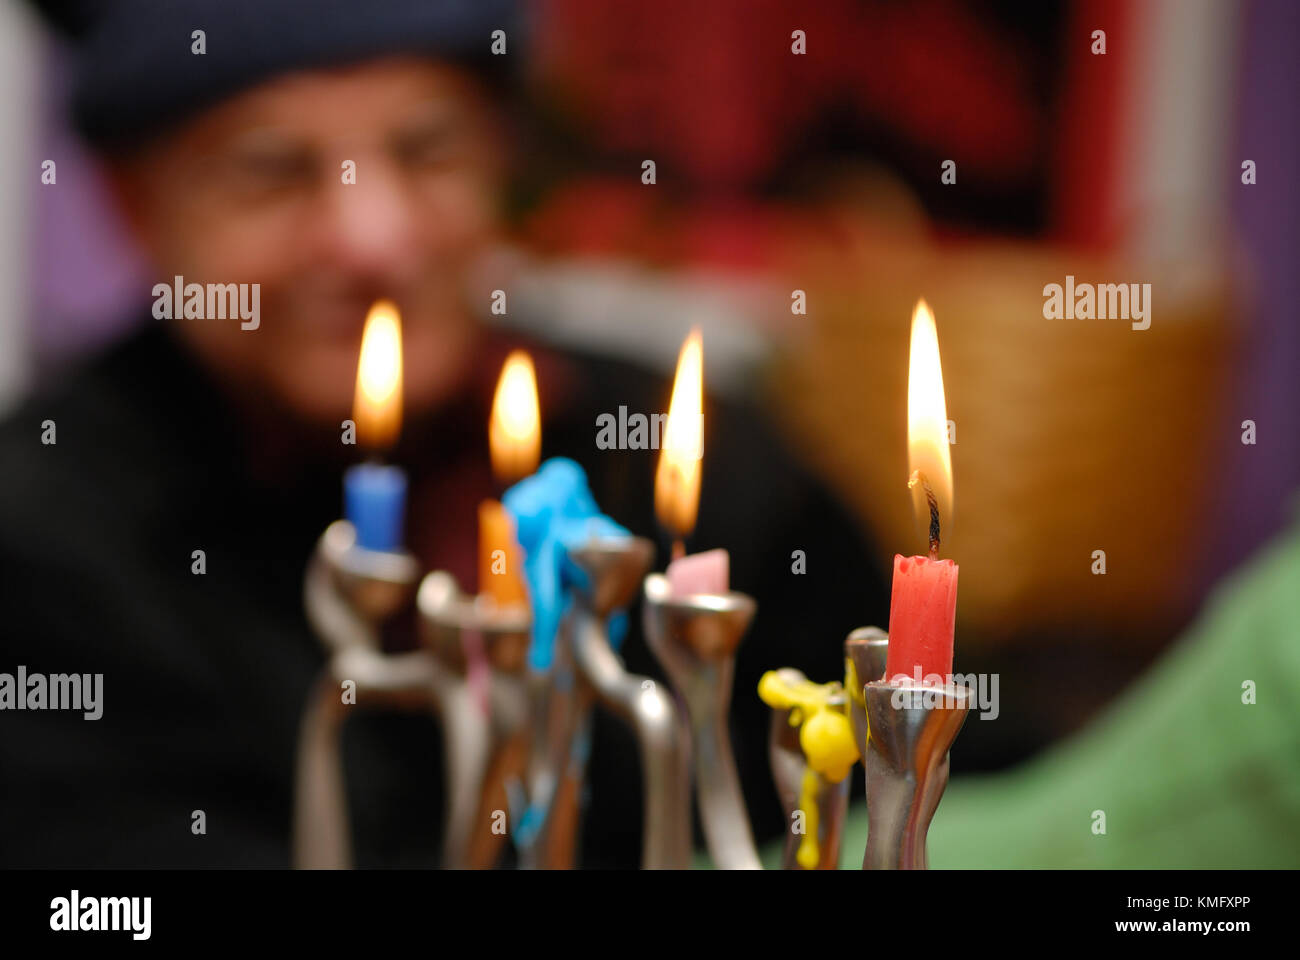 Hanukkah Menorah Hintergrund. closeup von Kerzen brennen während der Feier von Hanukkah, einem jüdischen Feiertag, alte Mann sehen Sie im Hintergrund. Stockfoto